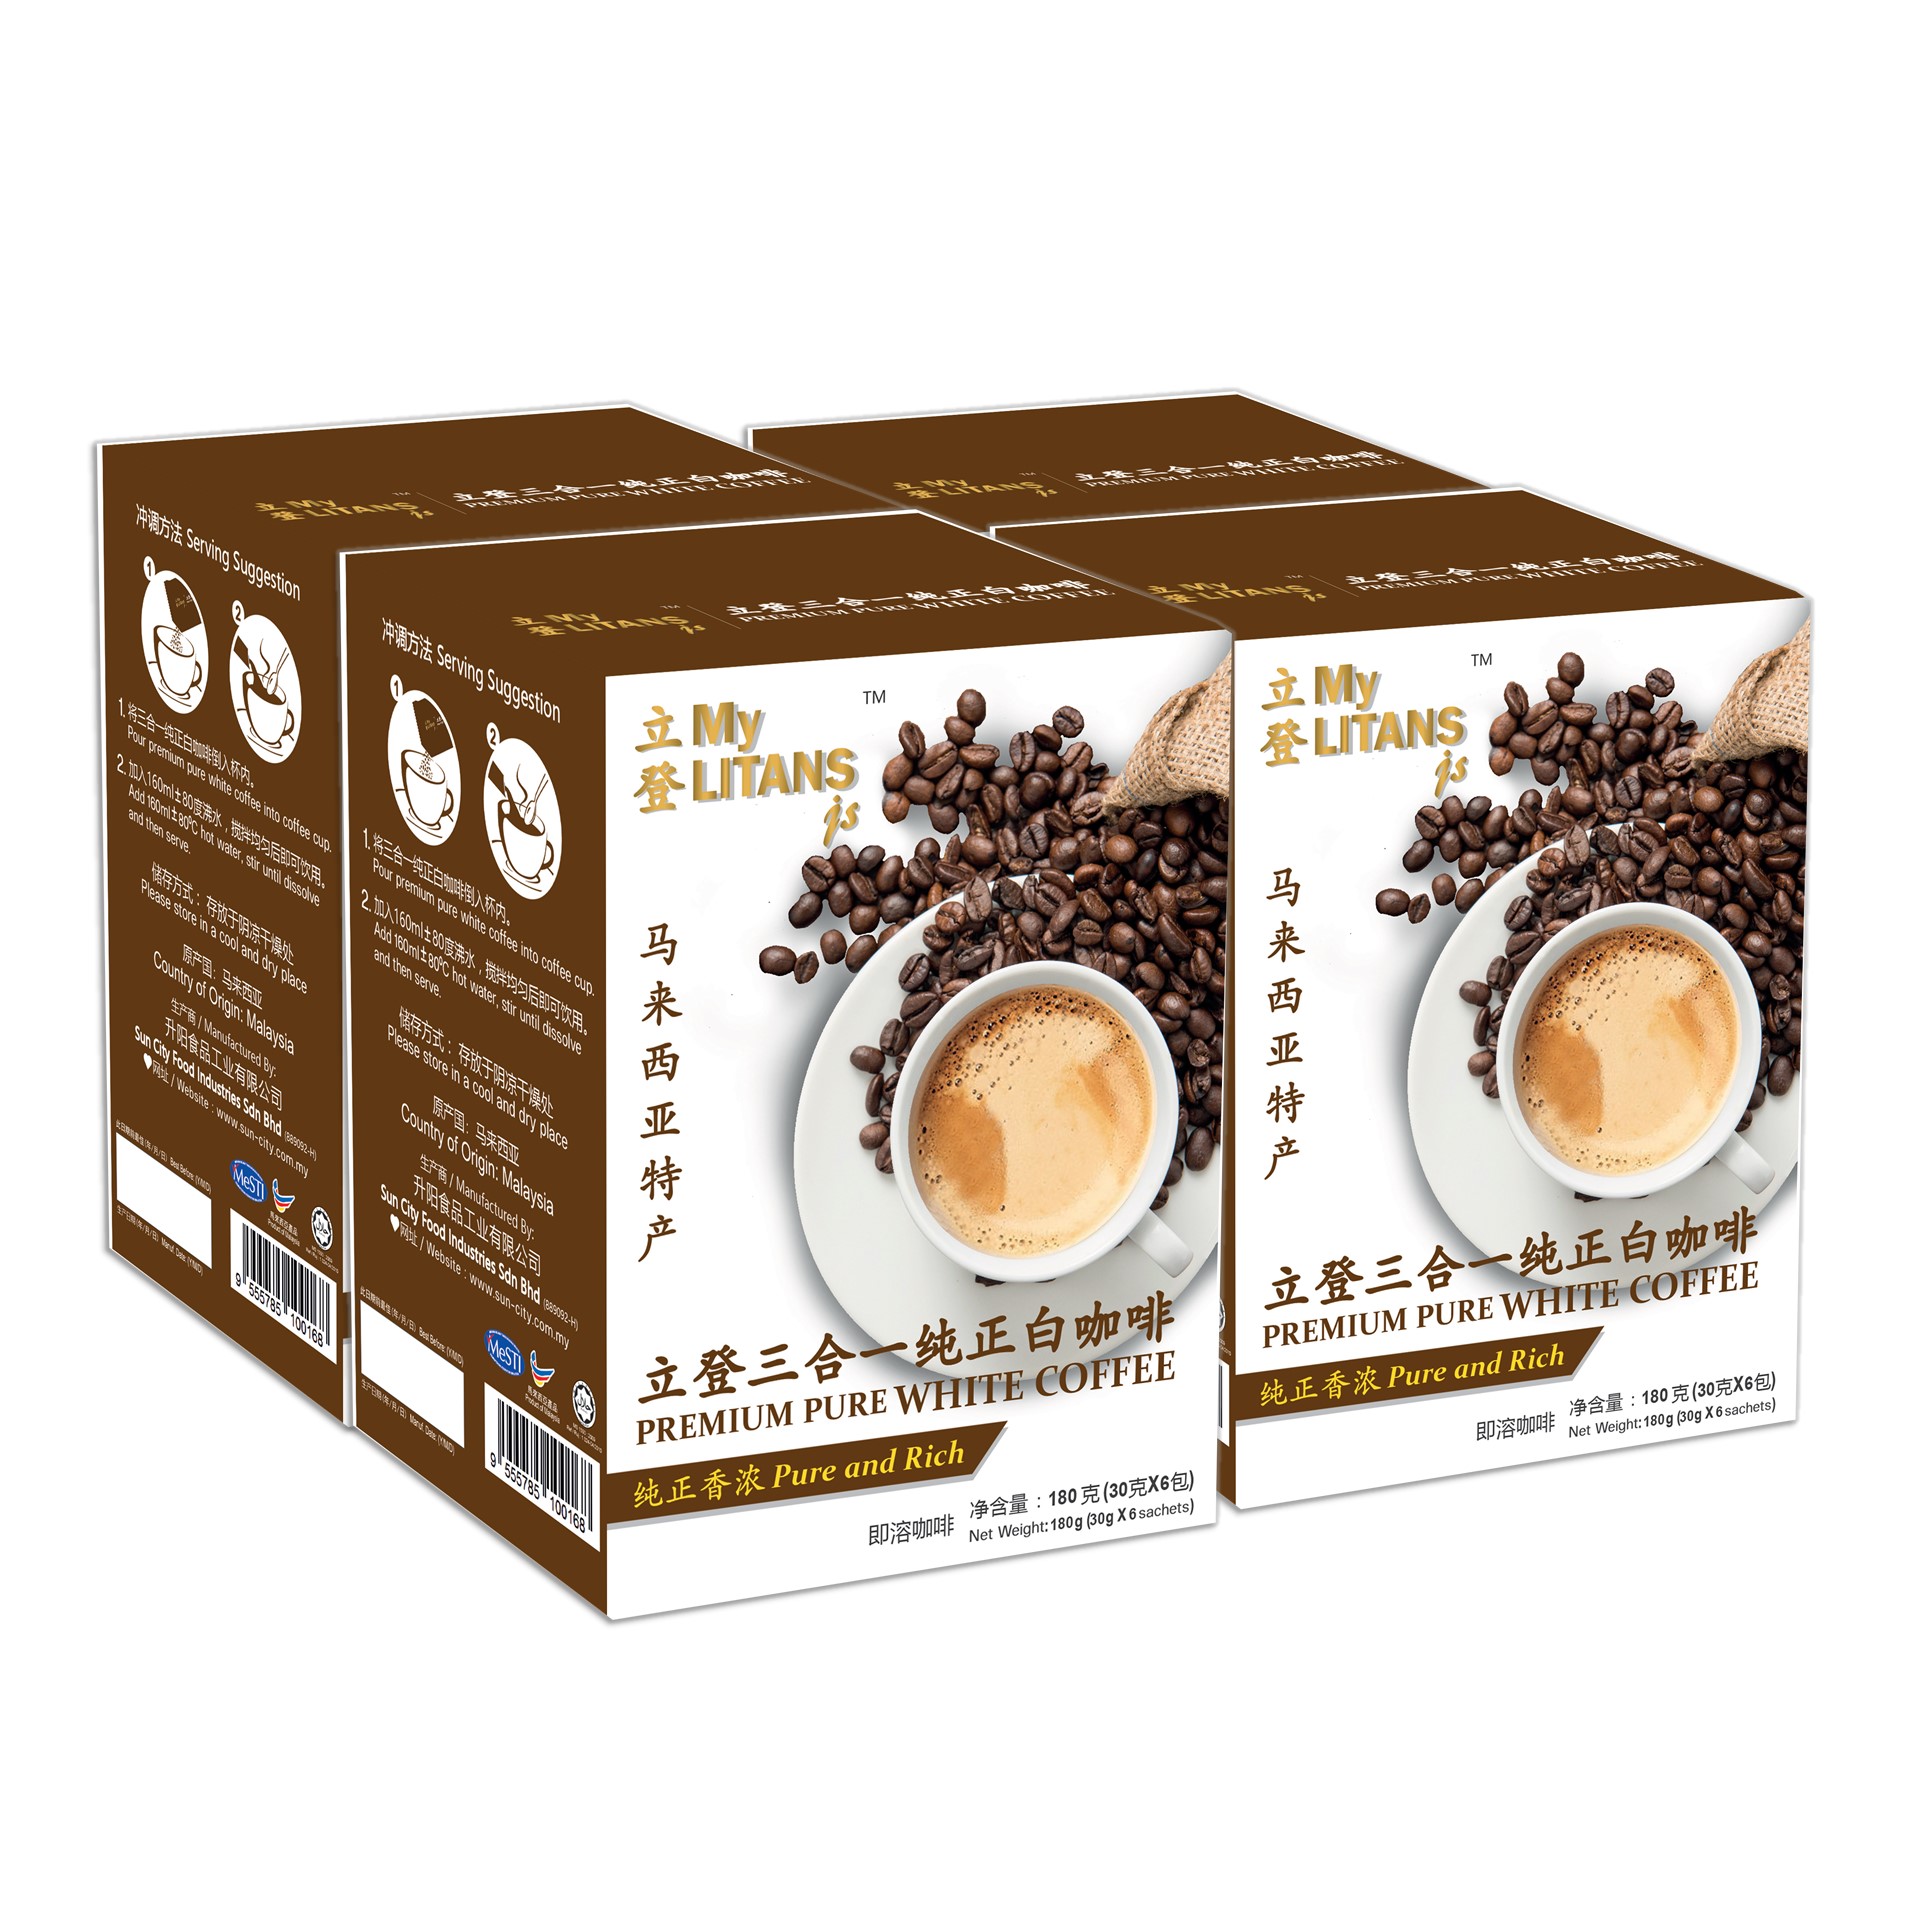 MyLITANSjs Premium Pure White Coffee 4 box 30 g x 6 ...